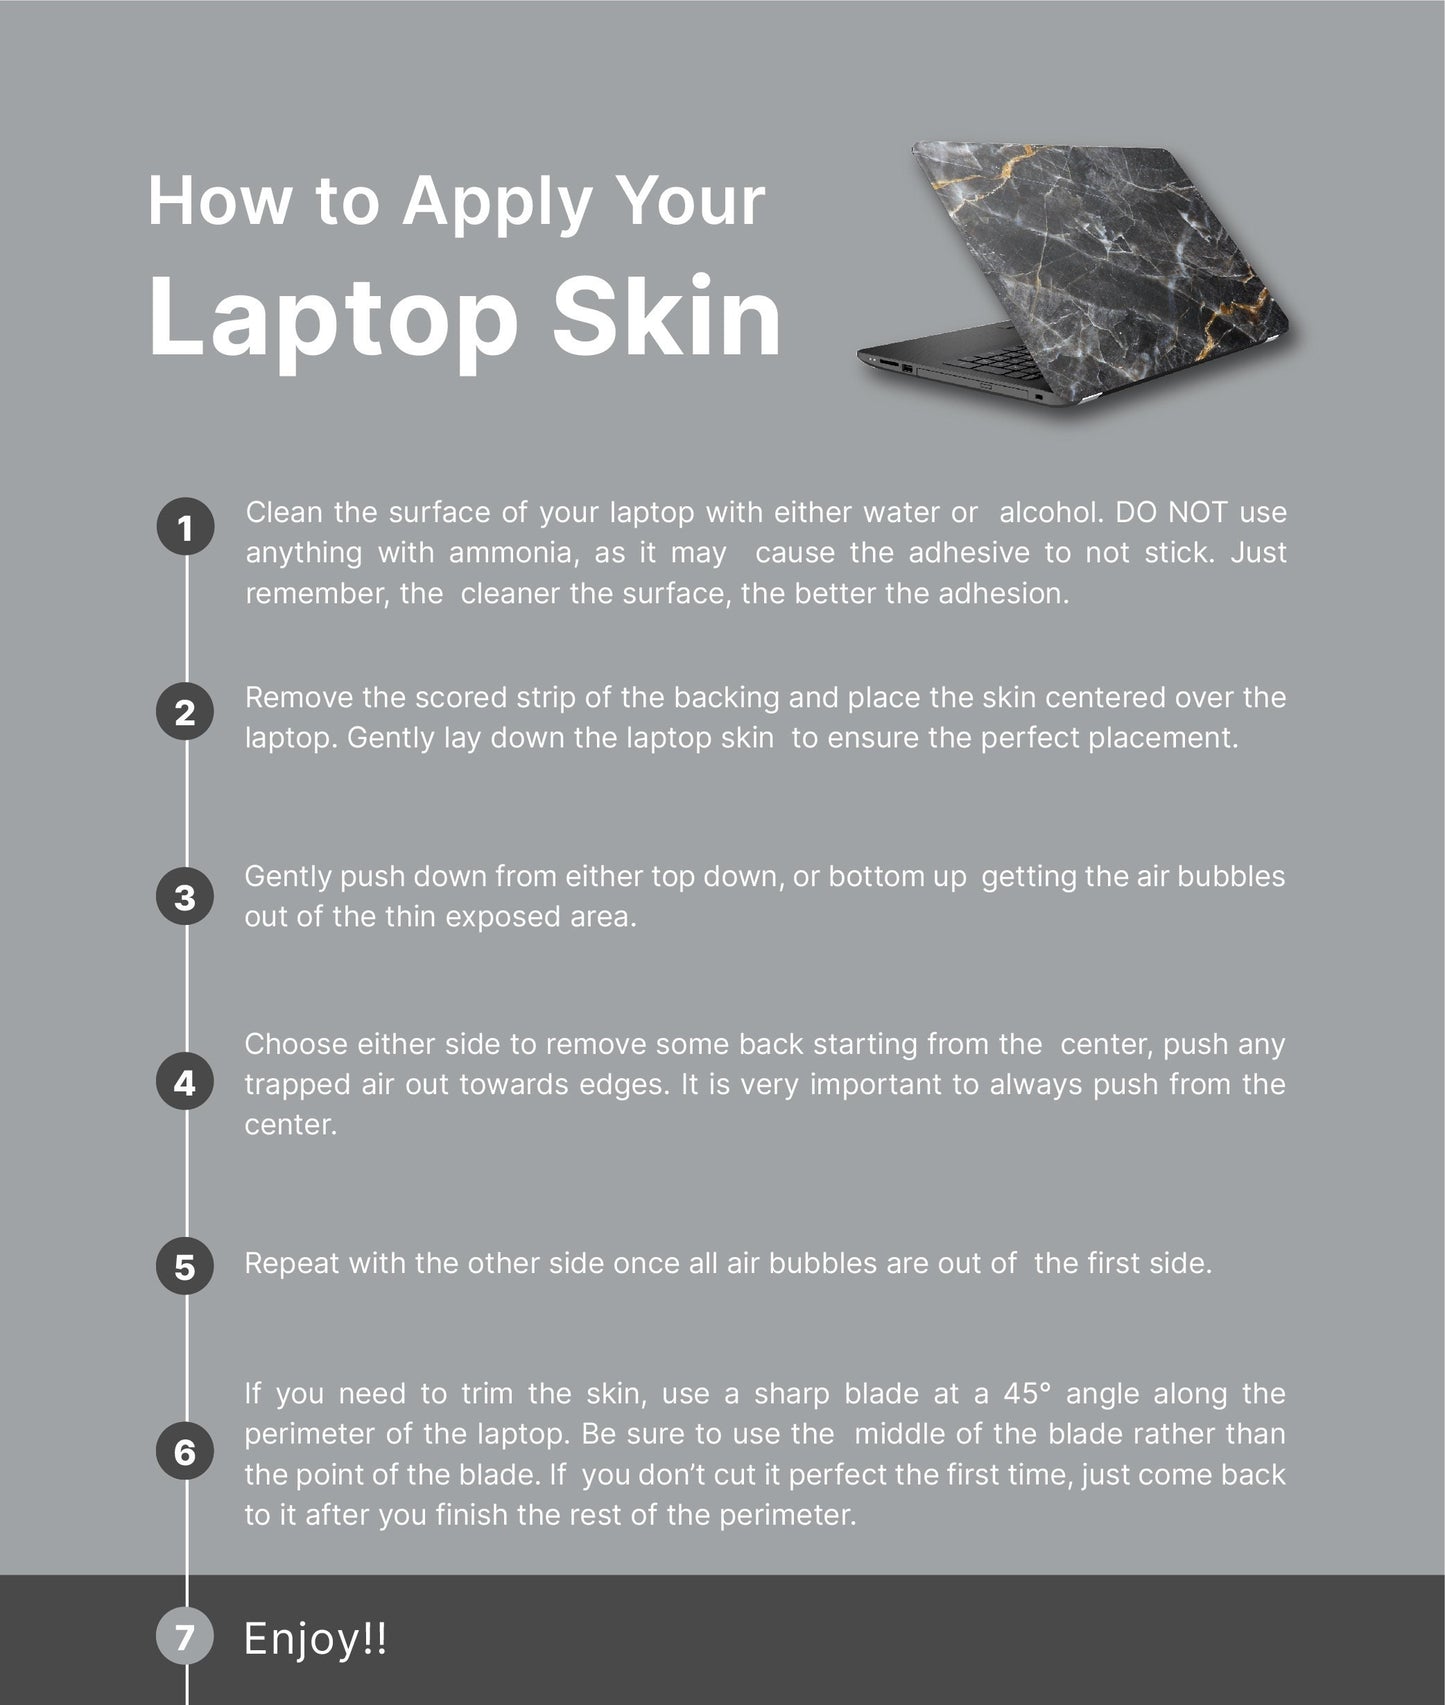 Sun Moon Laptop Skin, Laptop Cover, Laptop Skins, Removable Laptop Skins, Laptop Decal, Customized Laptop Skin, Laptop Stickers 148